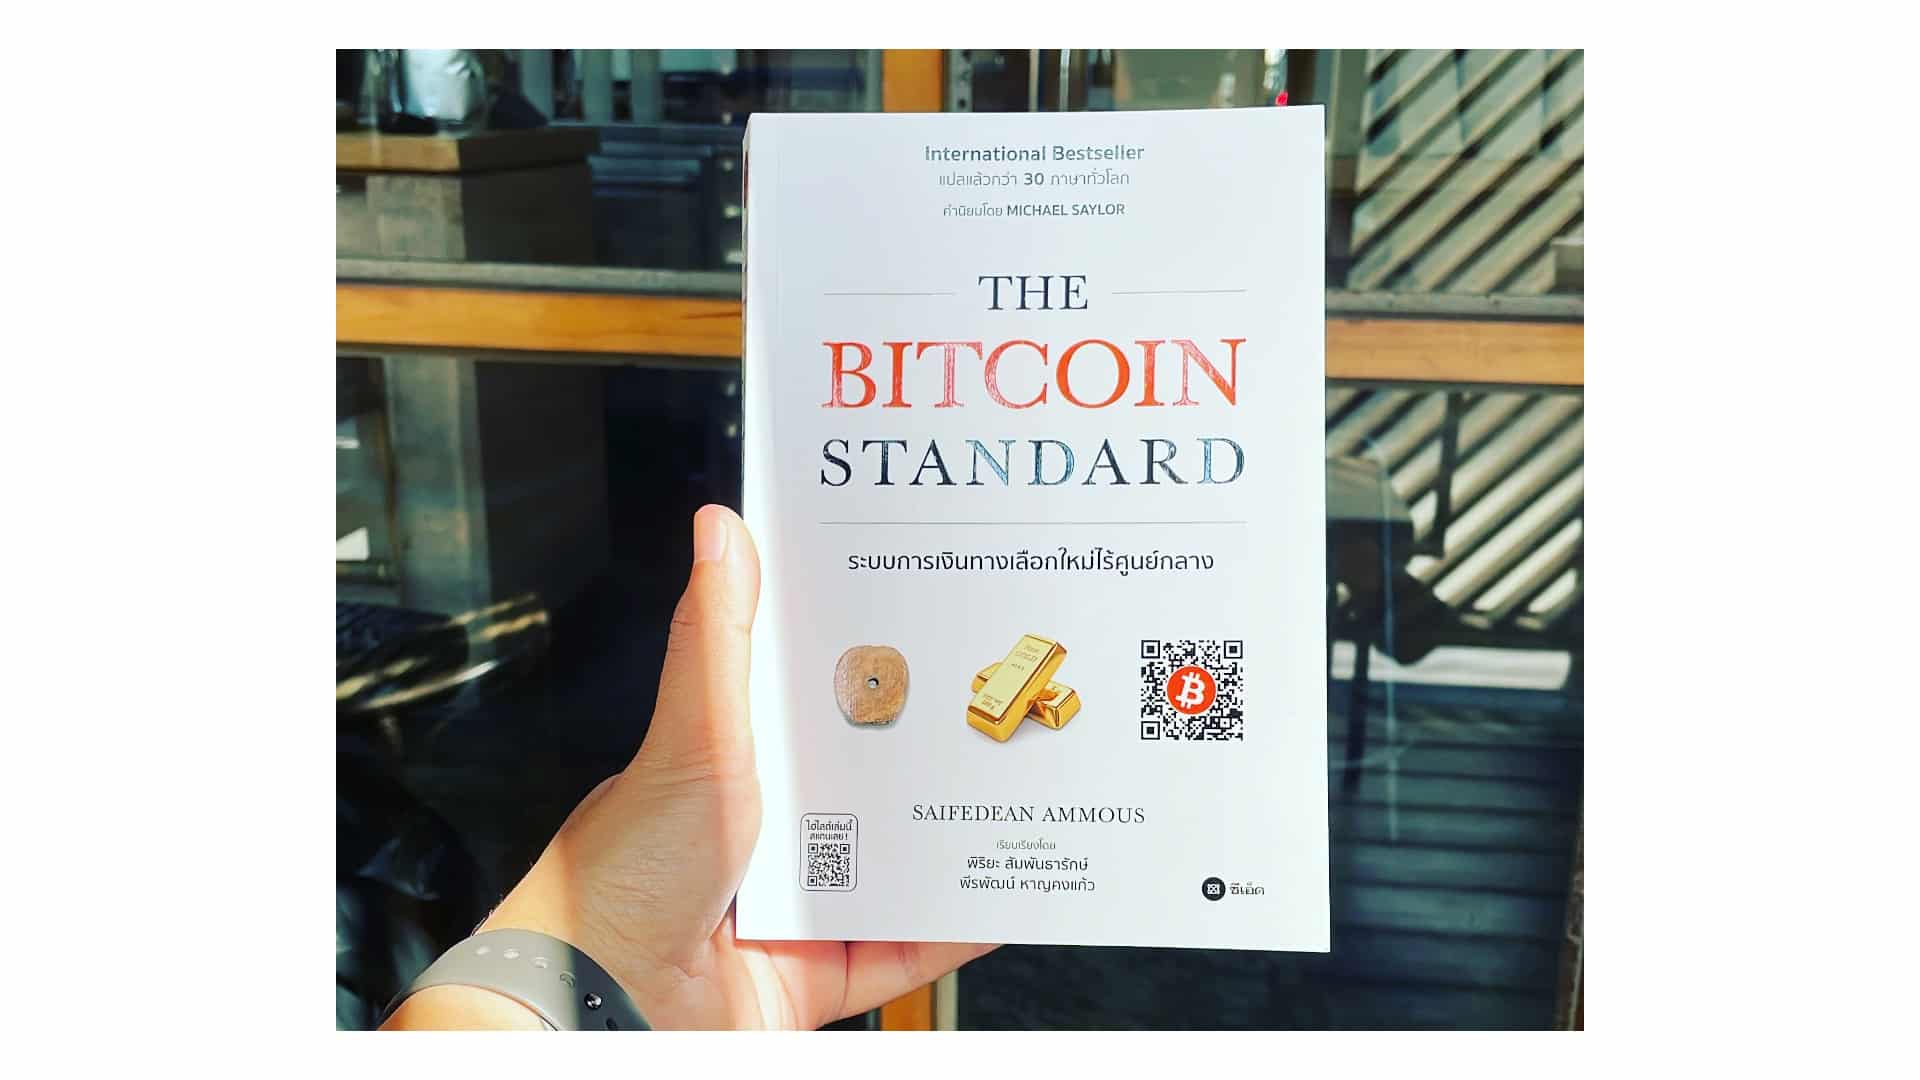 The Bitcoin Standard บิทคอยน์ ระบบการเงินทางเลือกใหม่ไร้ศูนย์กลาง